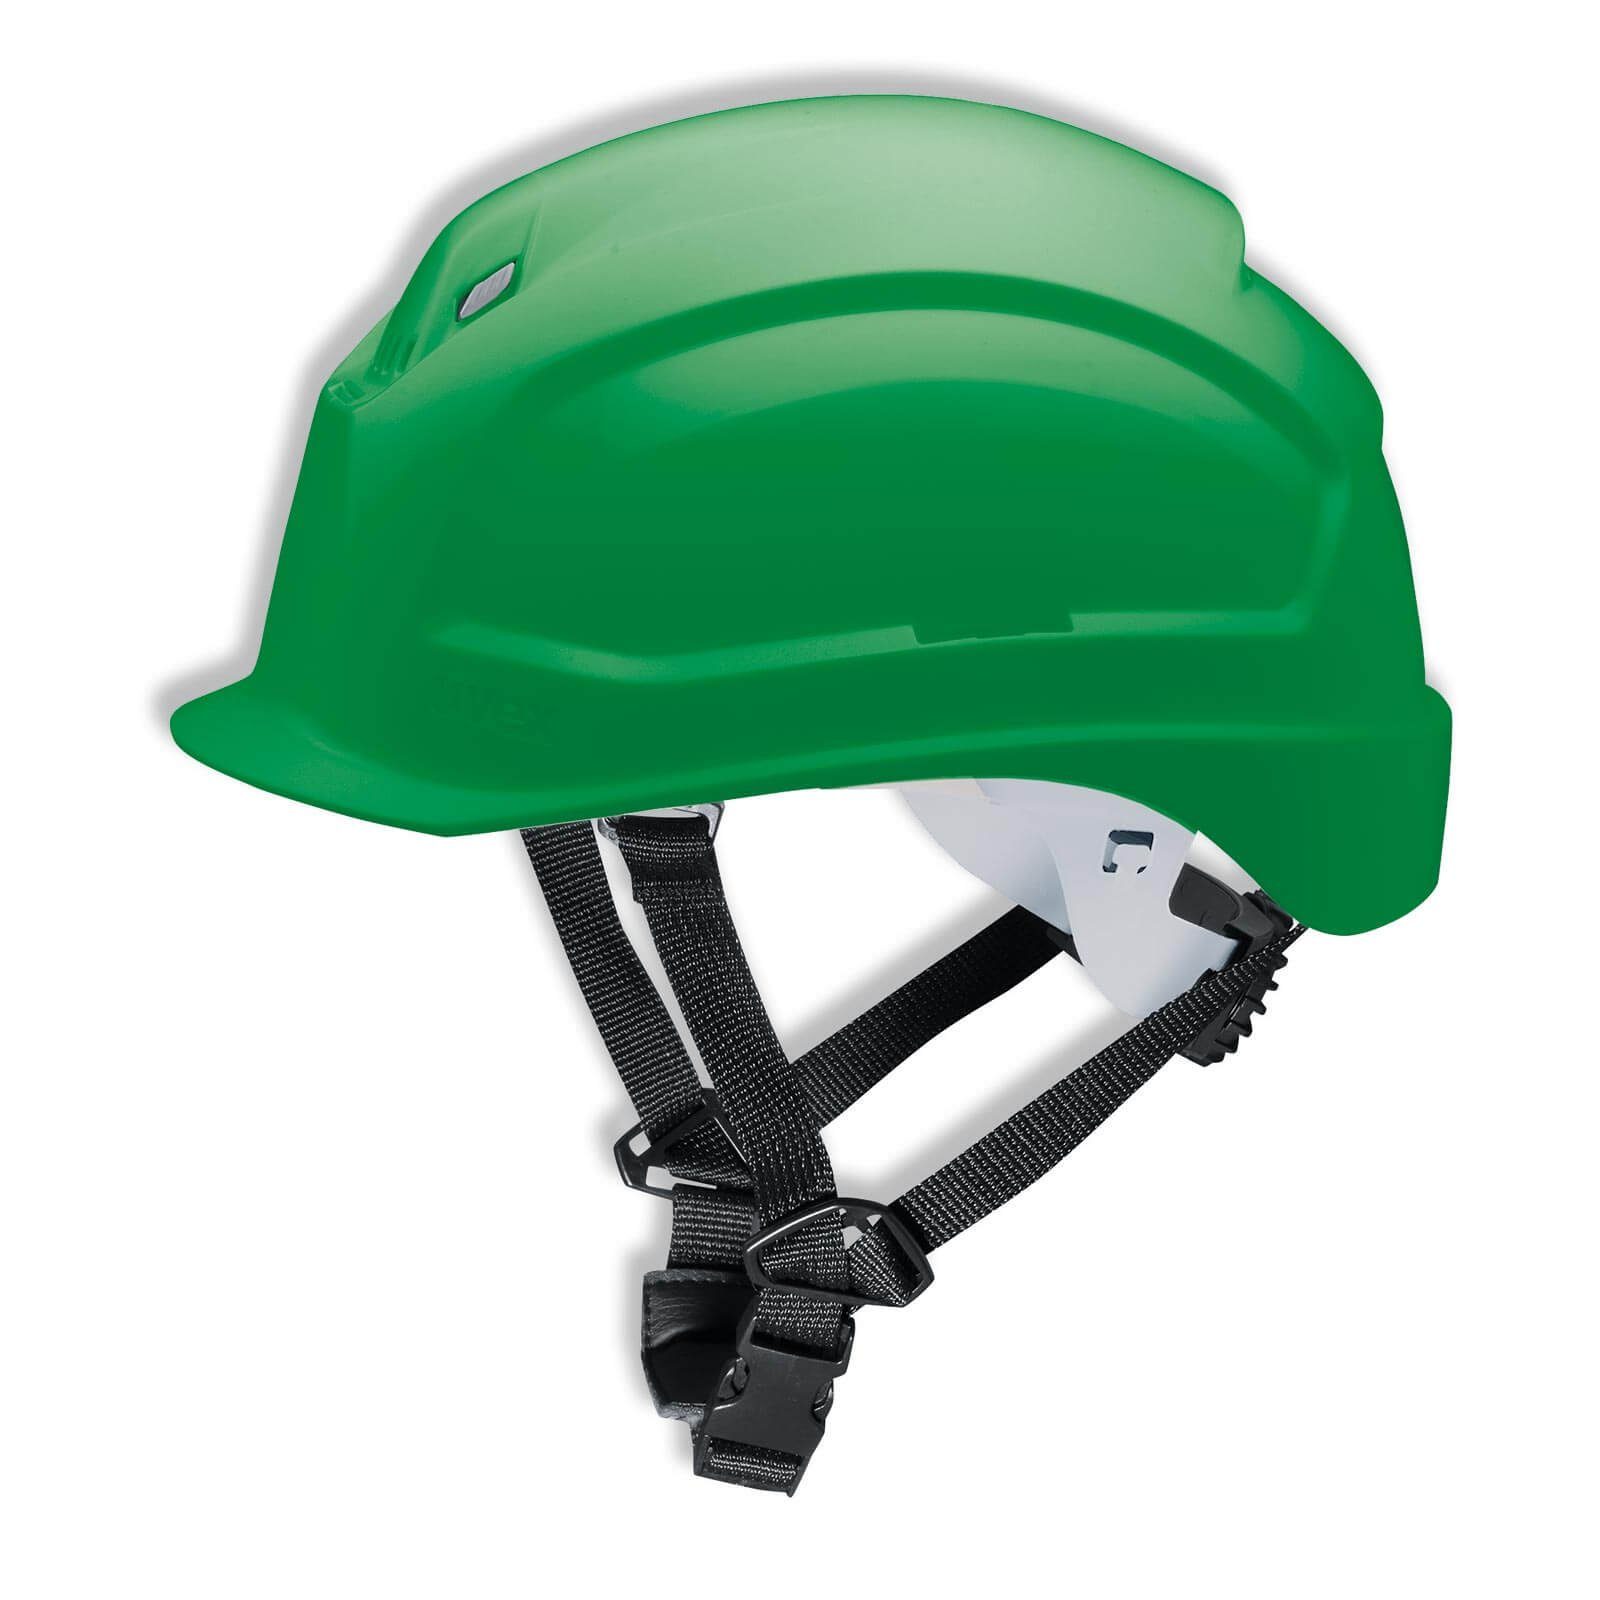 Uvex Schutzhelm pheos S-KR - 4-Punkt - Arbeitsschutz-Helm Vormontierter grün Kinnriemen